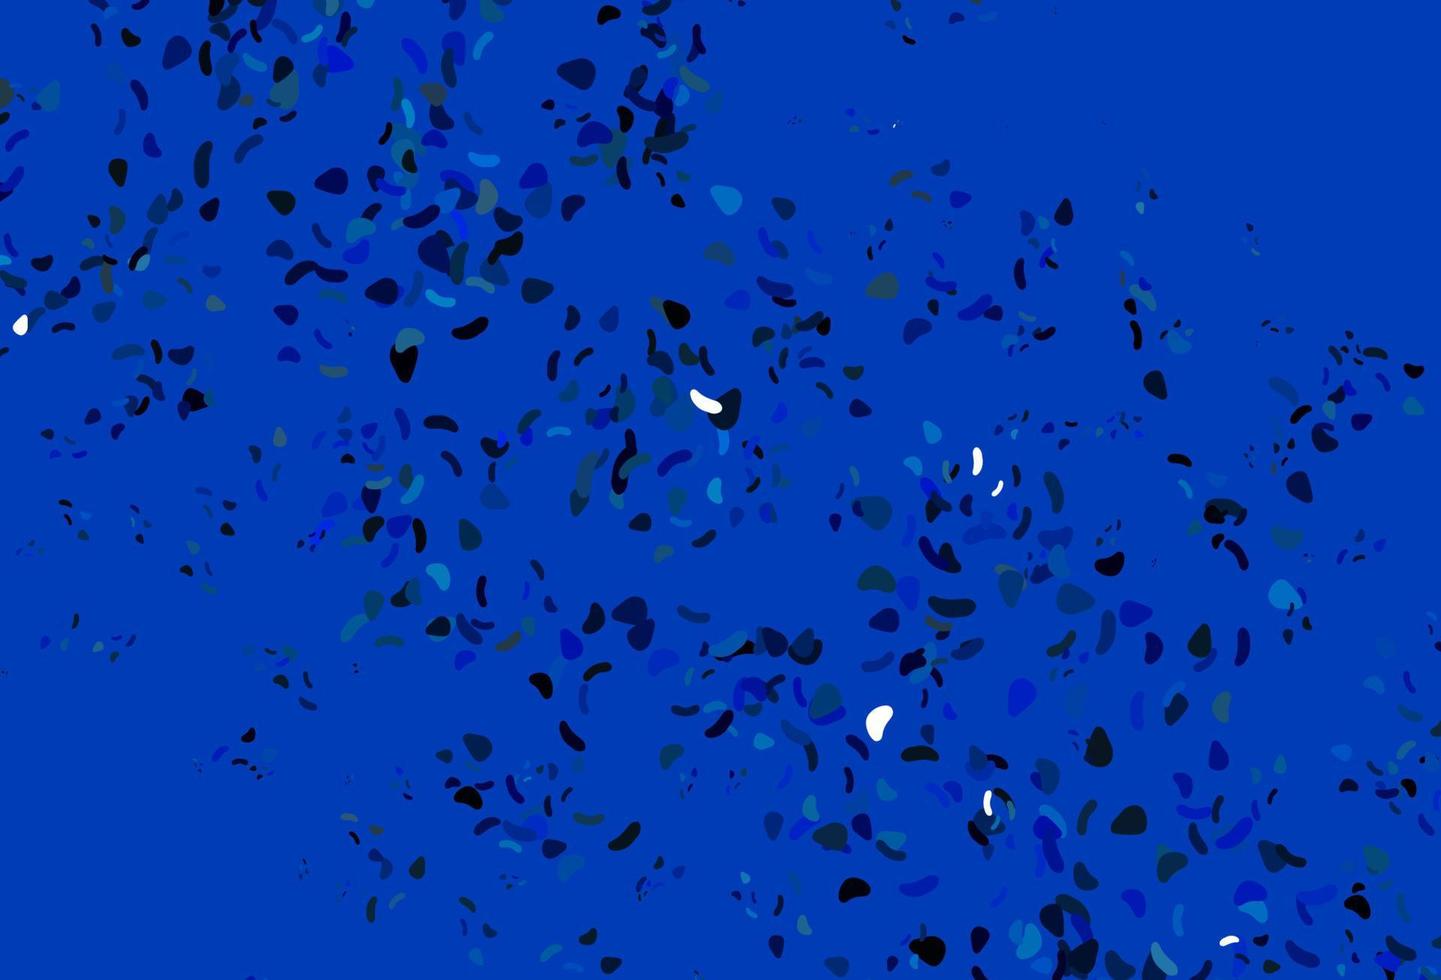 texture vettoriale blu chiaro con forme casuali.